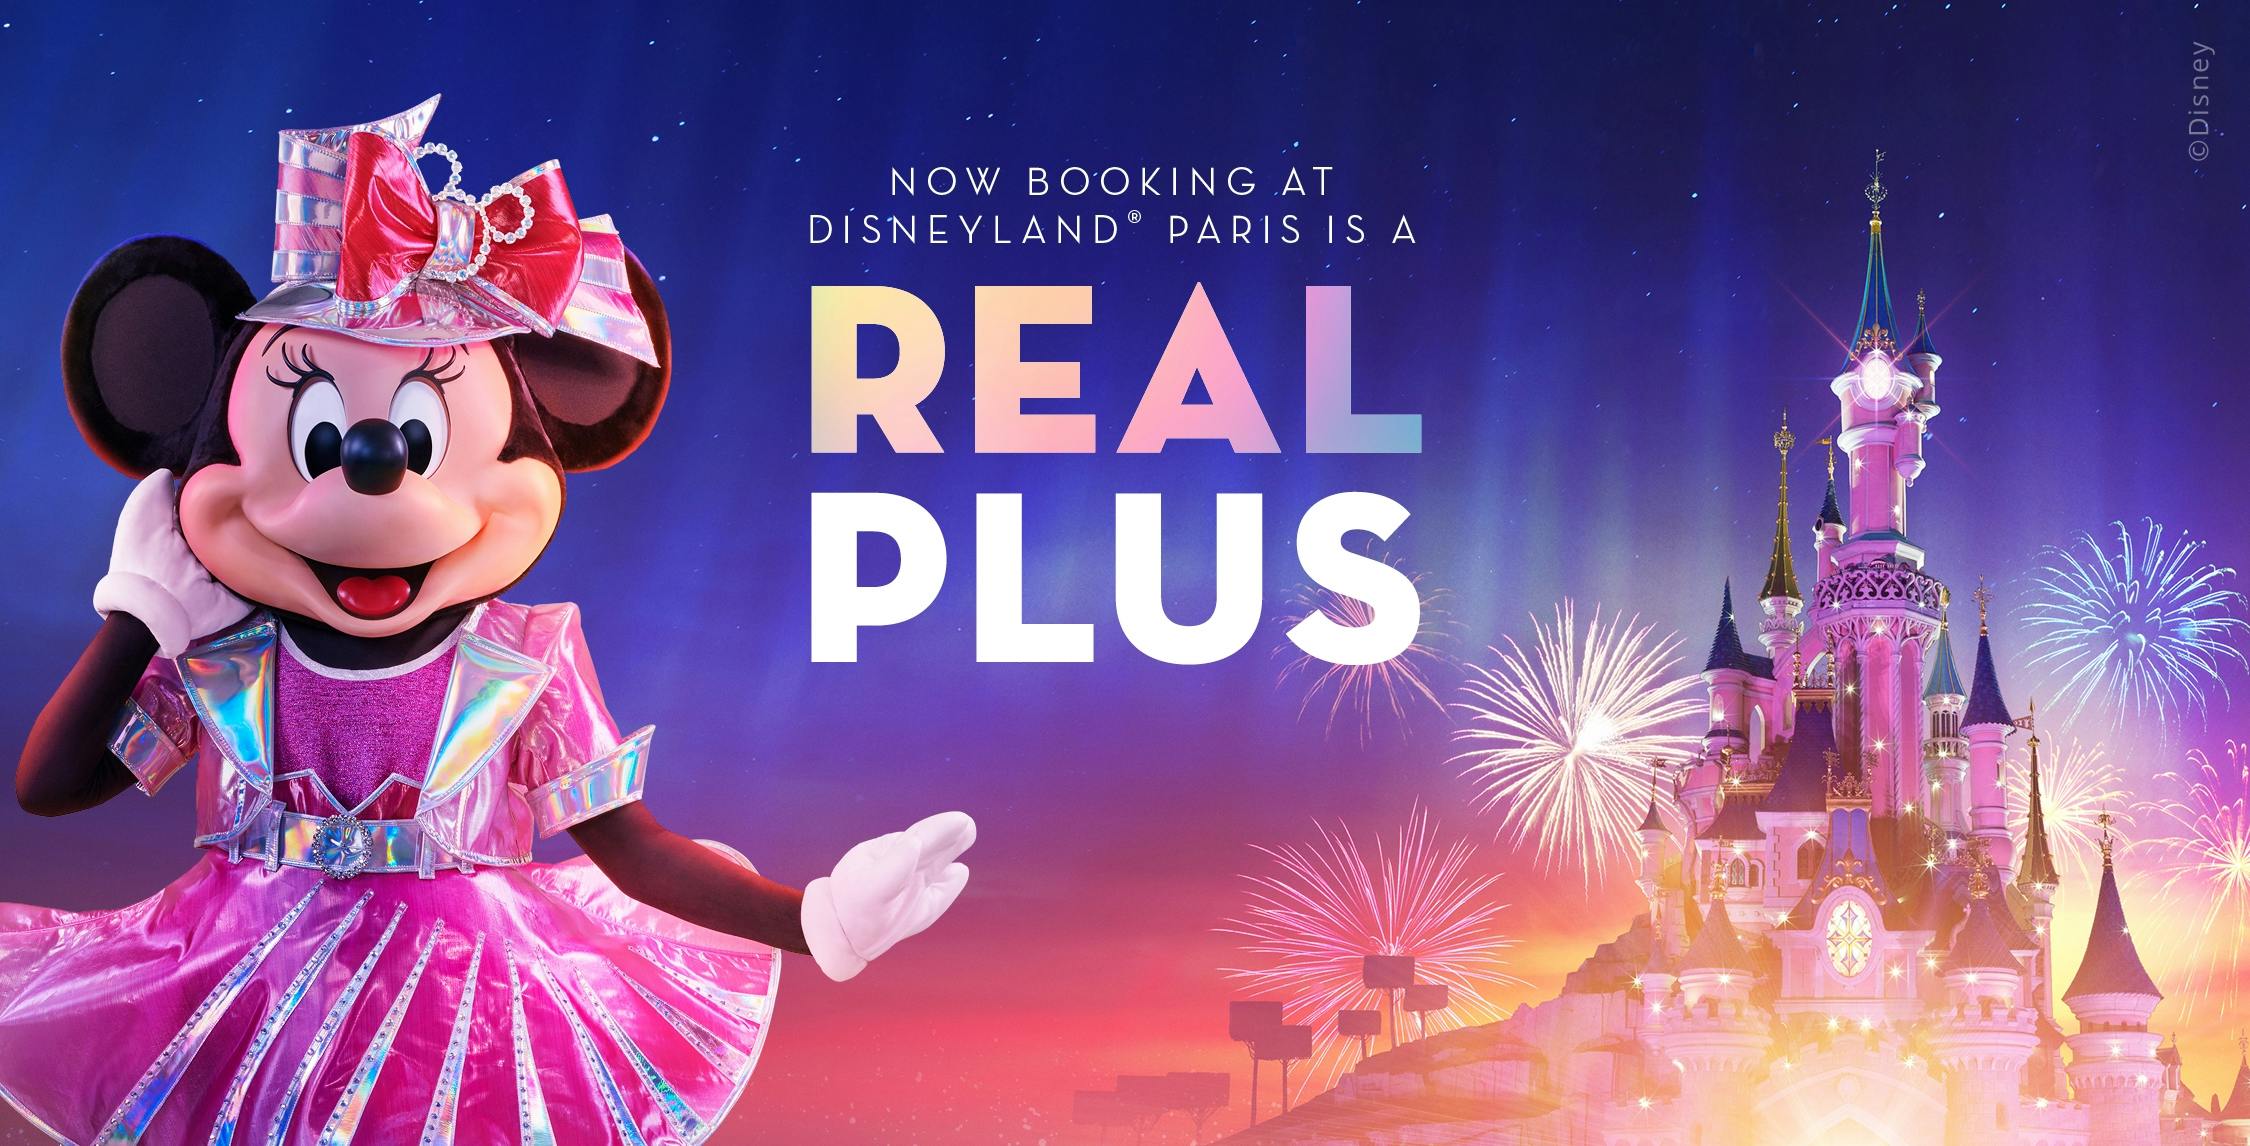 1-Tages-Tickets für Disneyland Paris und kostenloses Disney+*